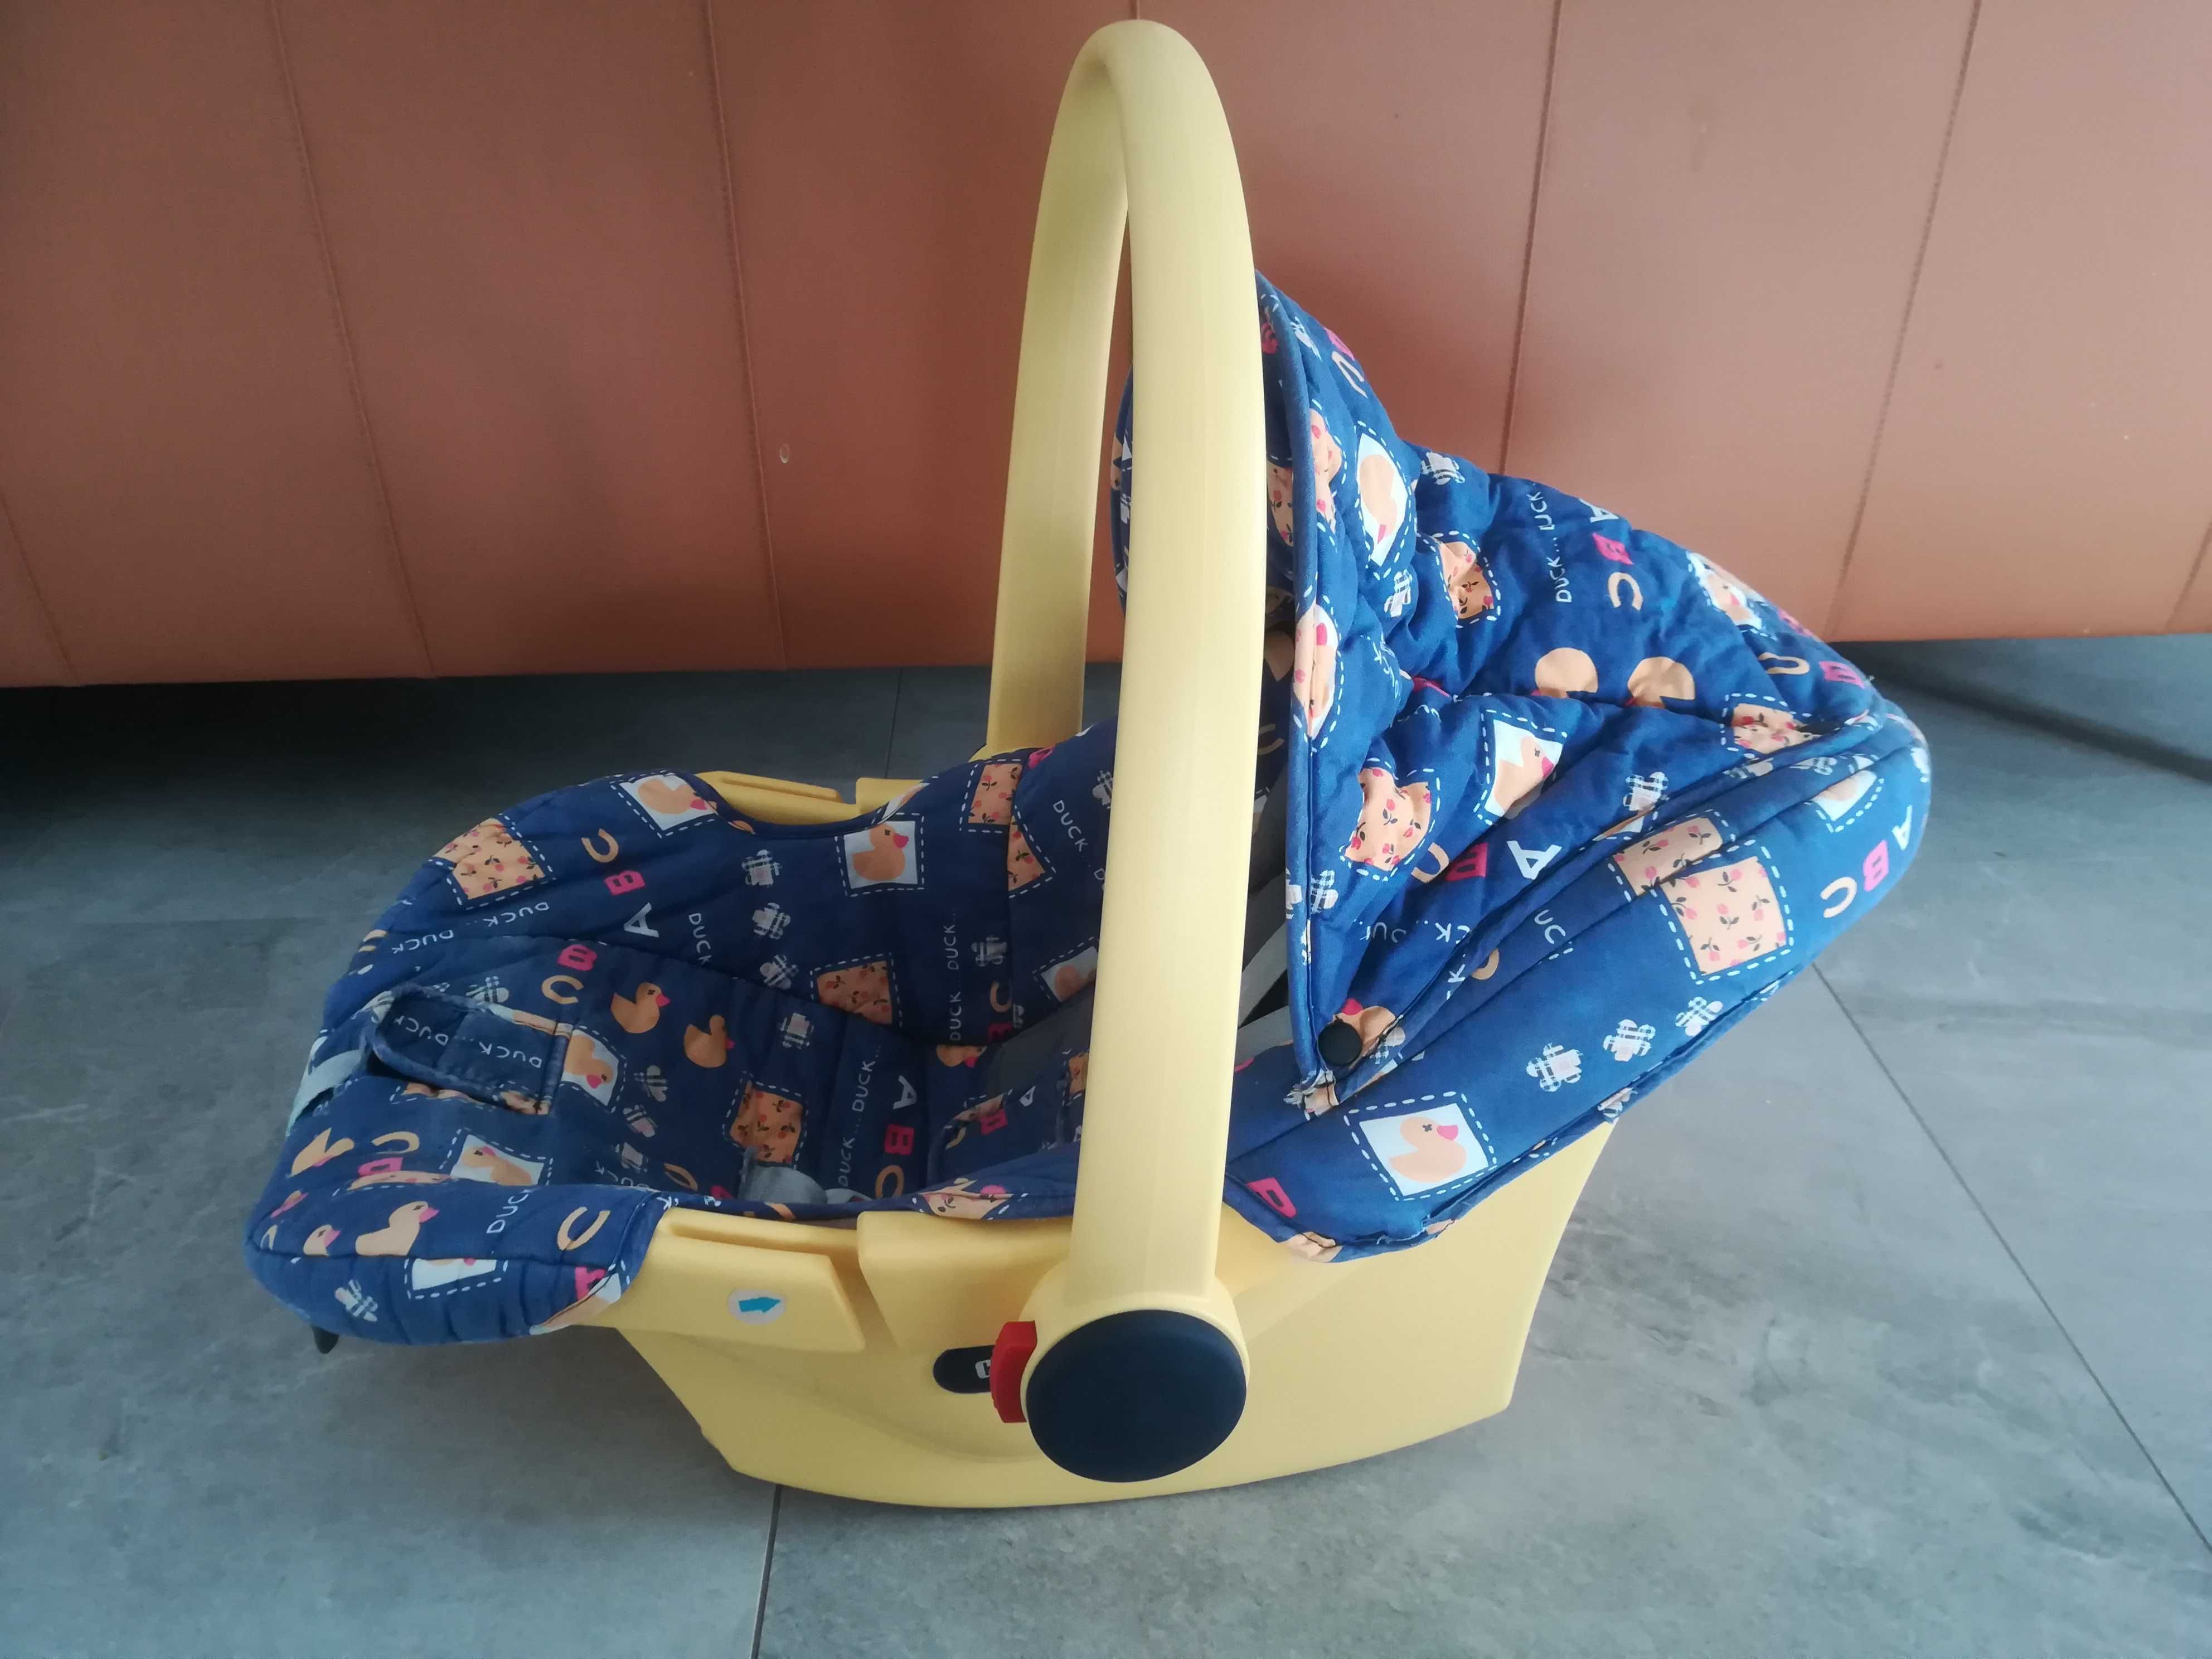 PIĘKNE nosidełko / fotelik dla noworodka CHICCO w idealnym stanie